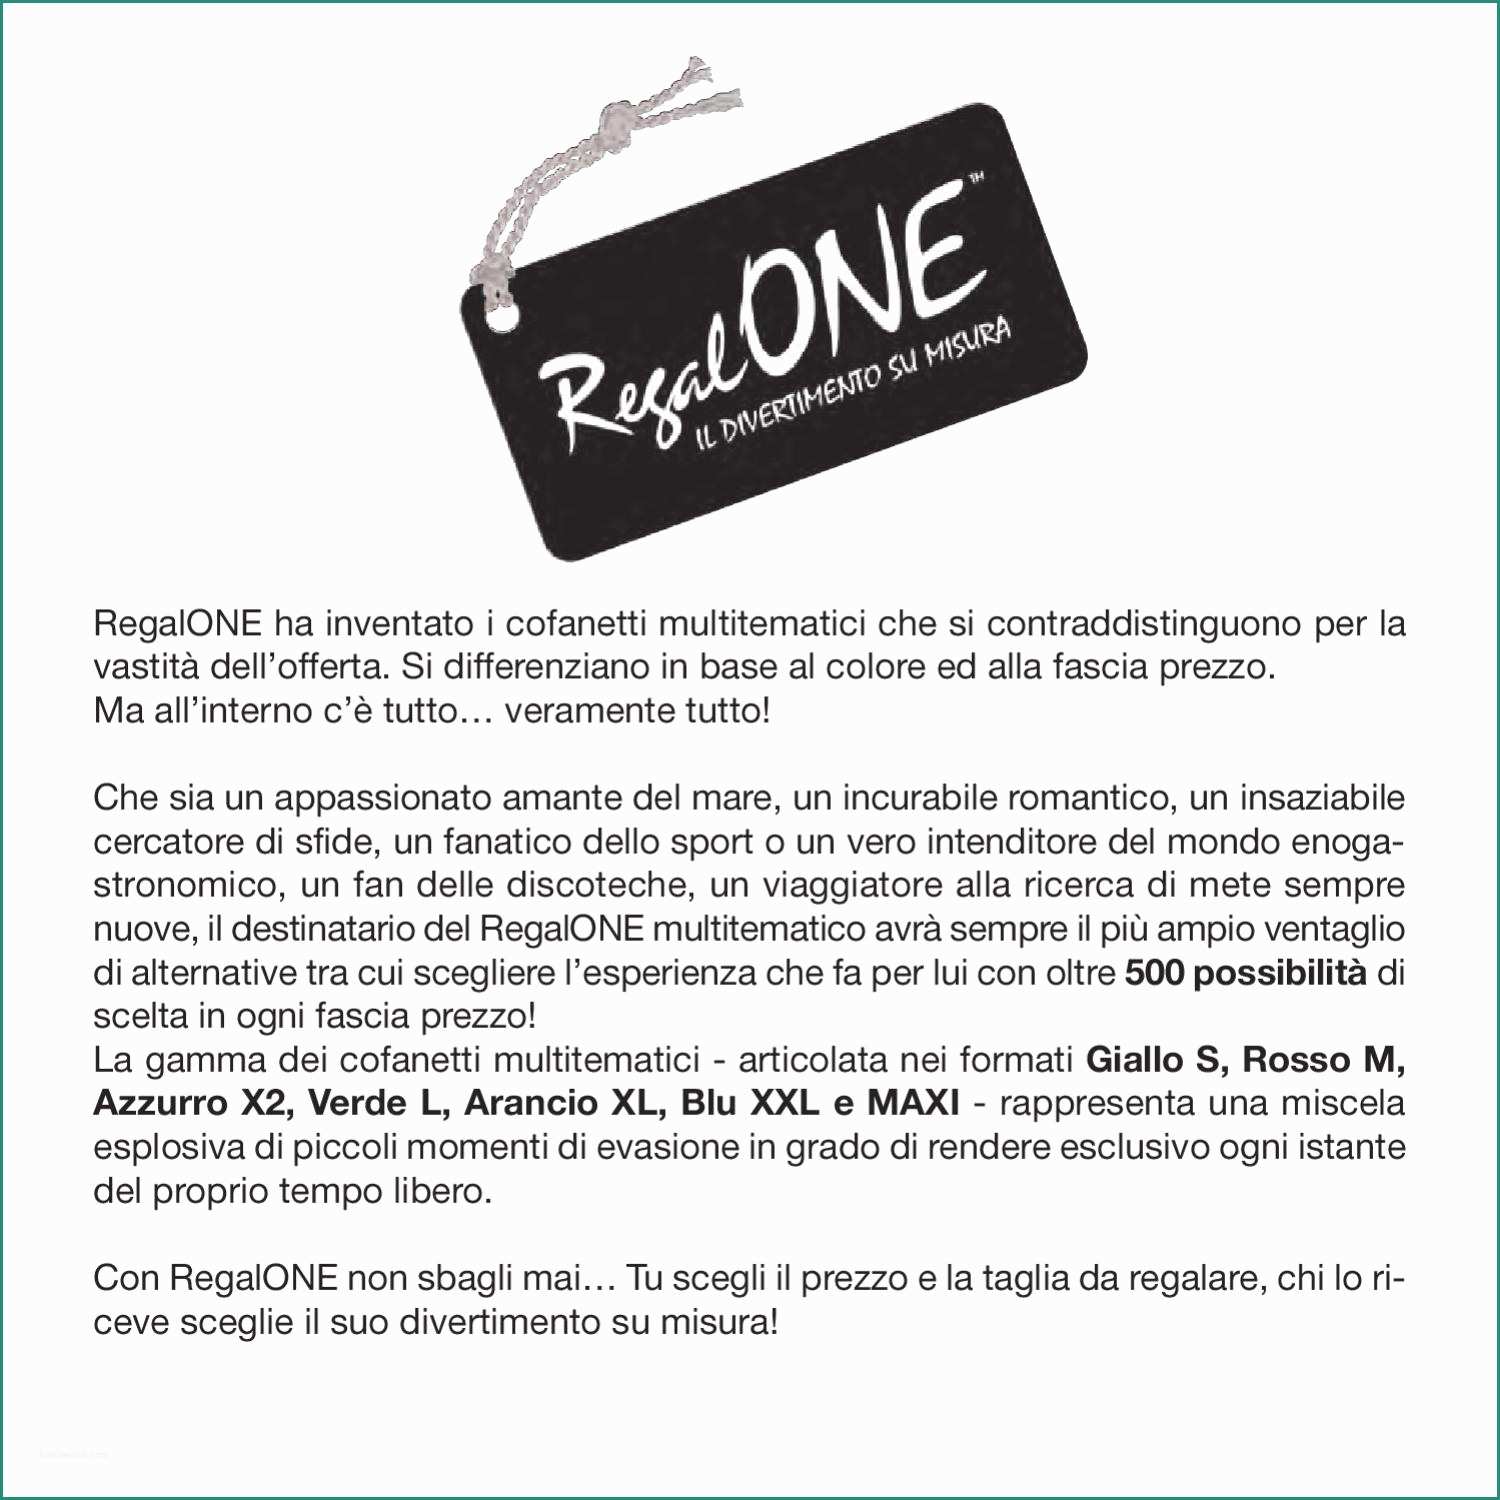 Verande In Legno Prezzi Al Mq E Brochure Rosso M Regalone by Fnac Italia issuu